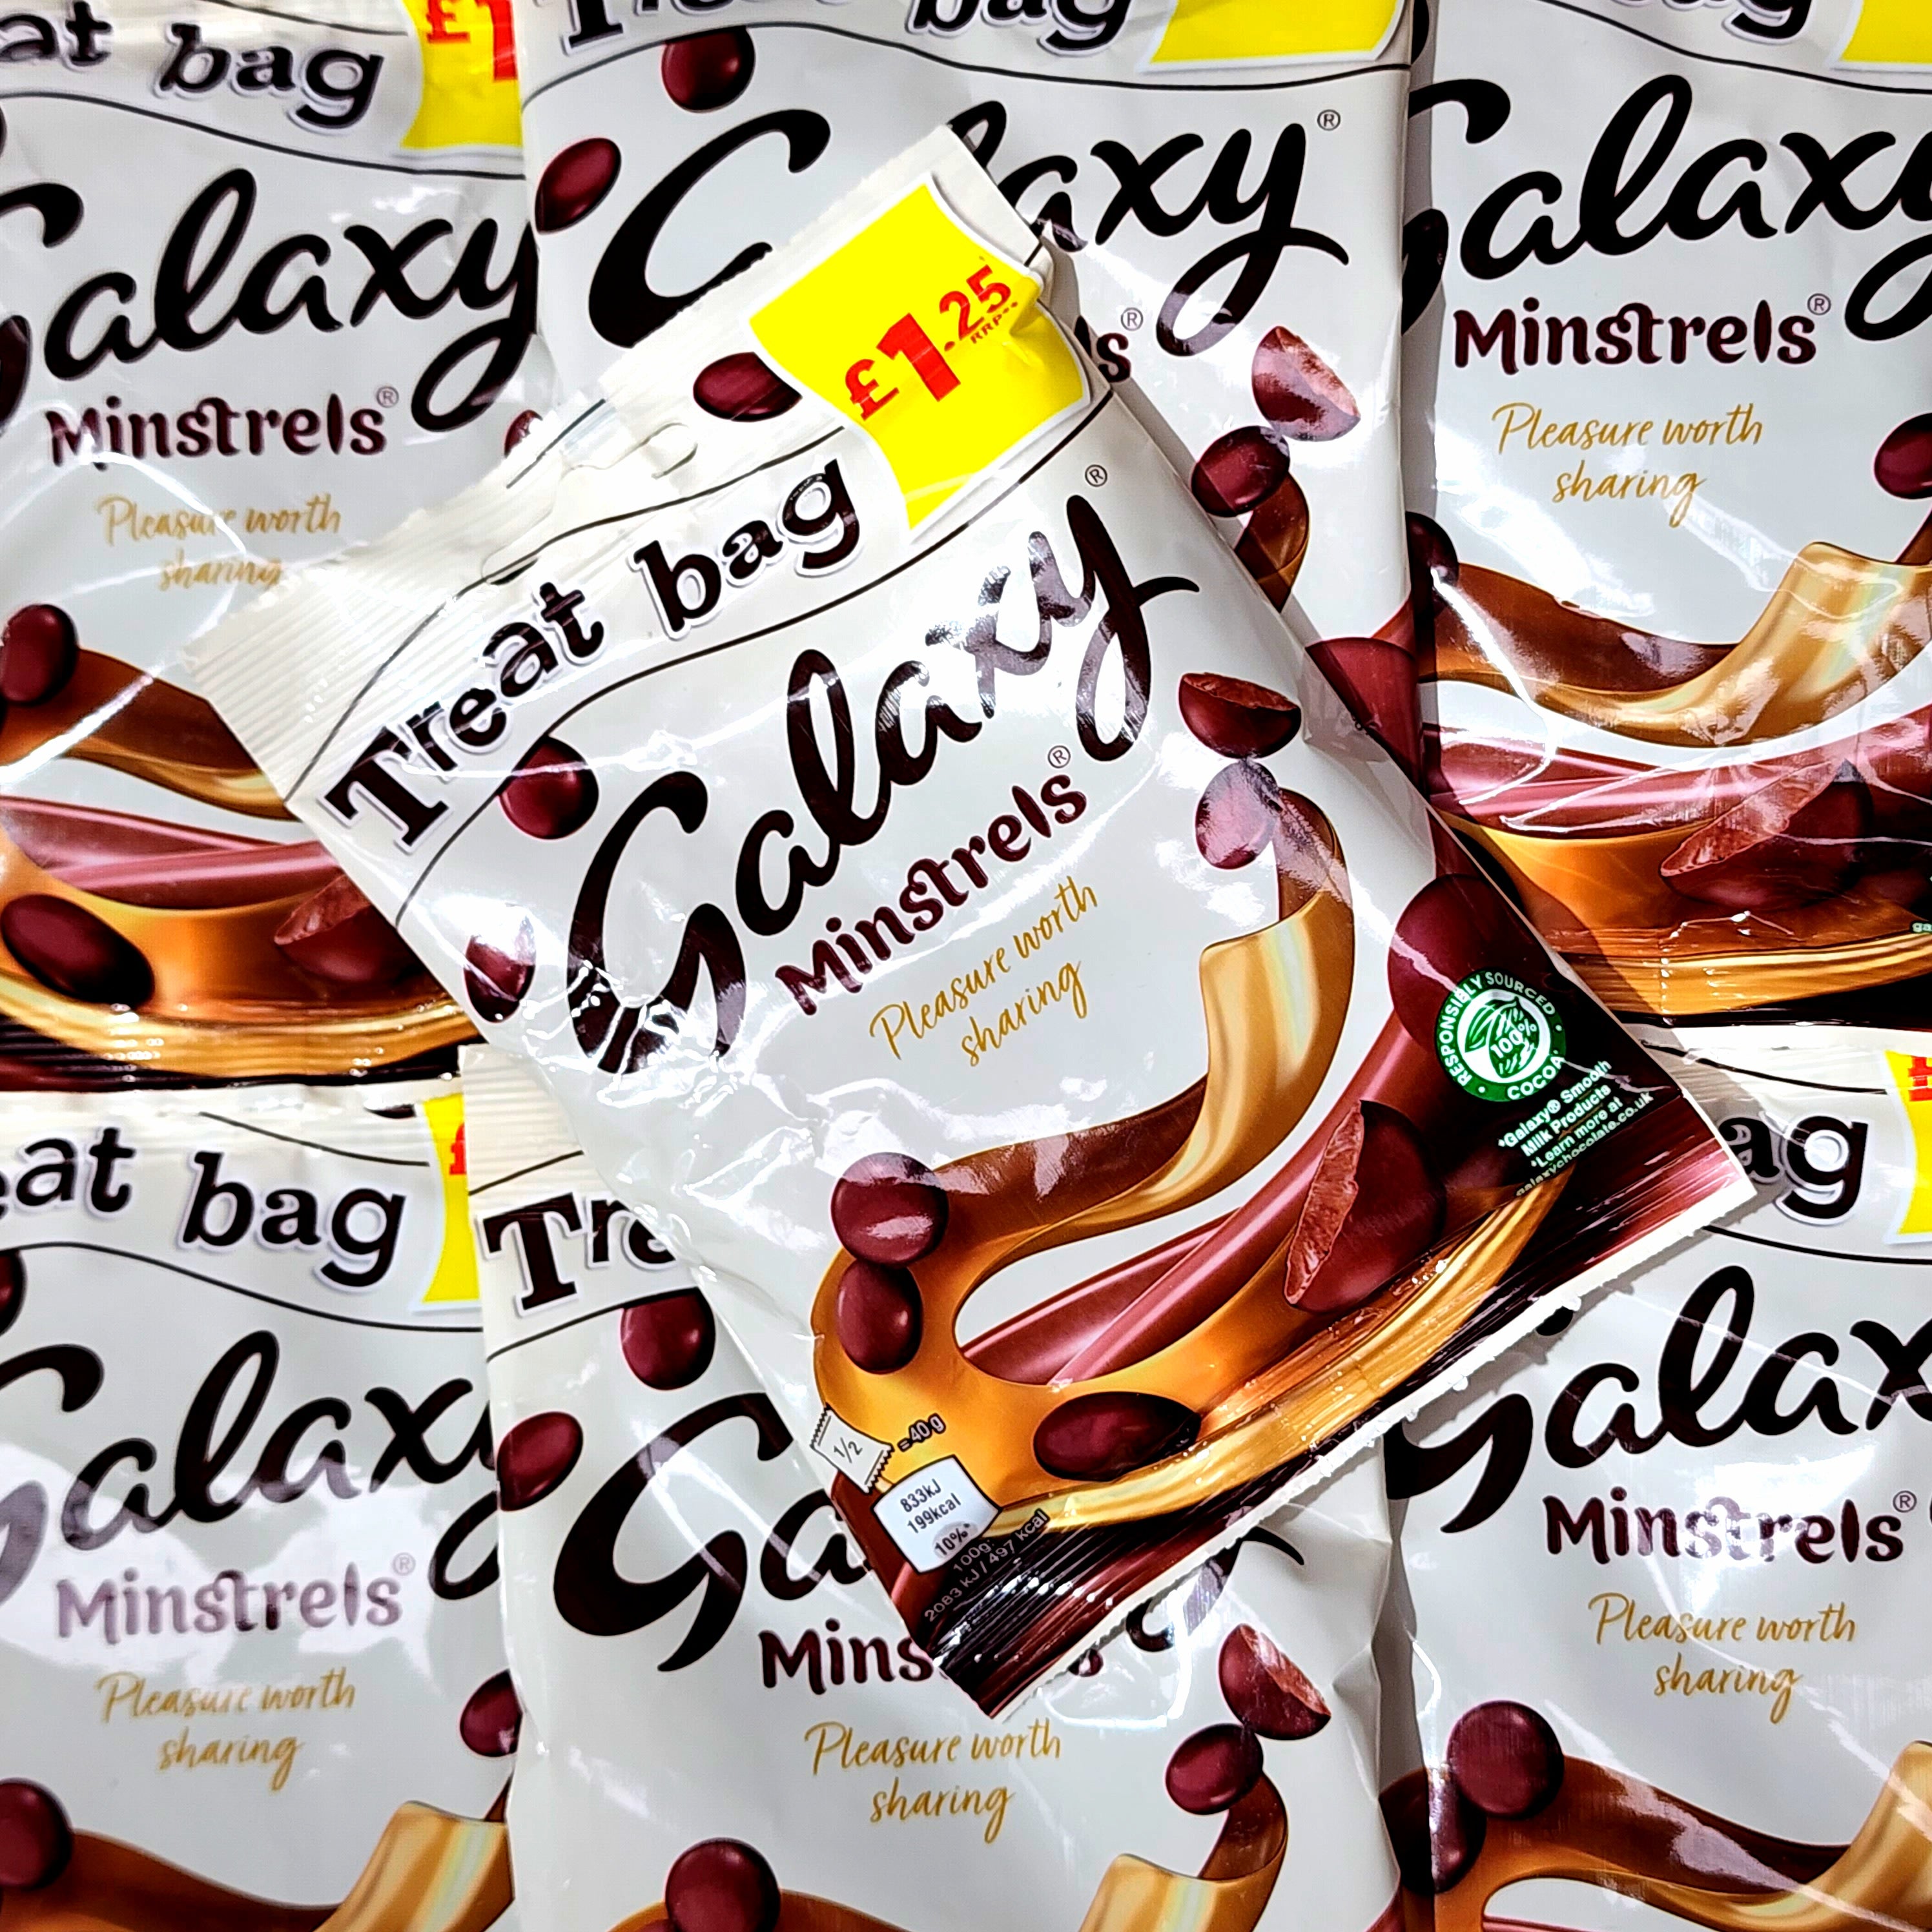 Galaxy Minstrels Treat Bag - Pik n Mix Lollies NZ